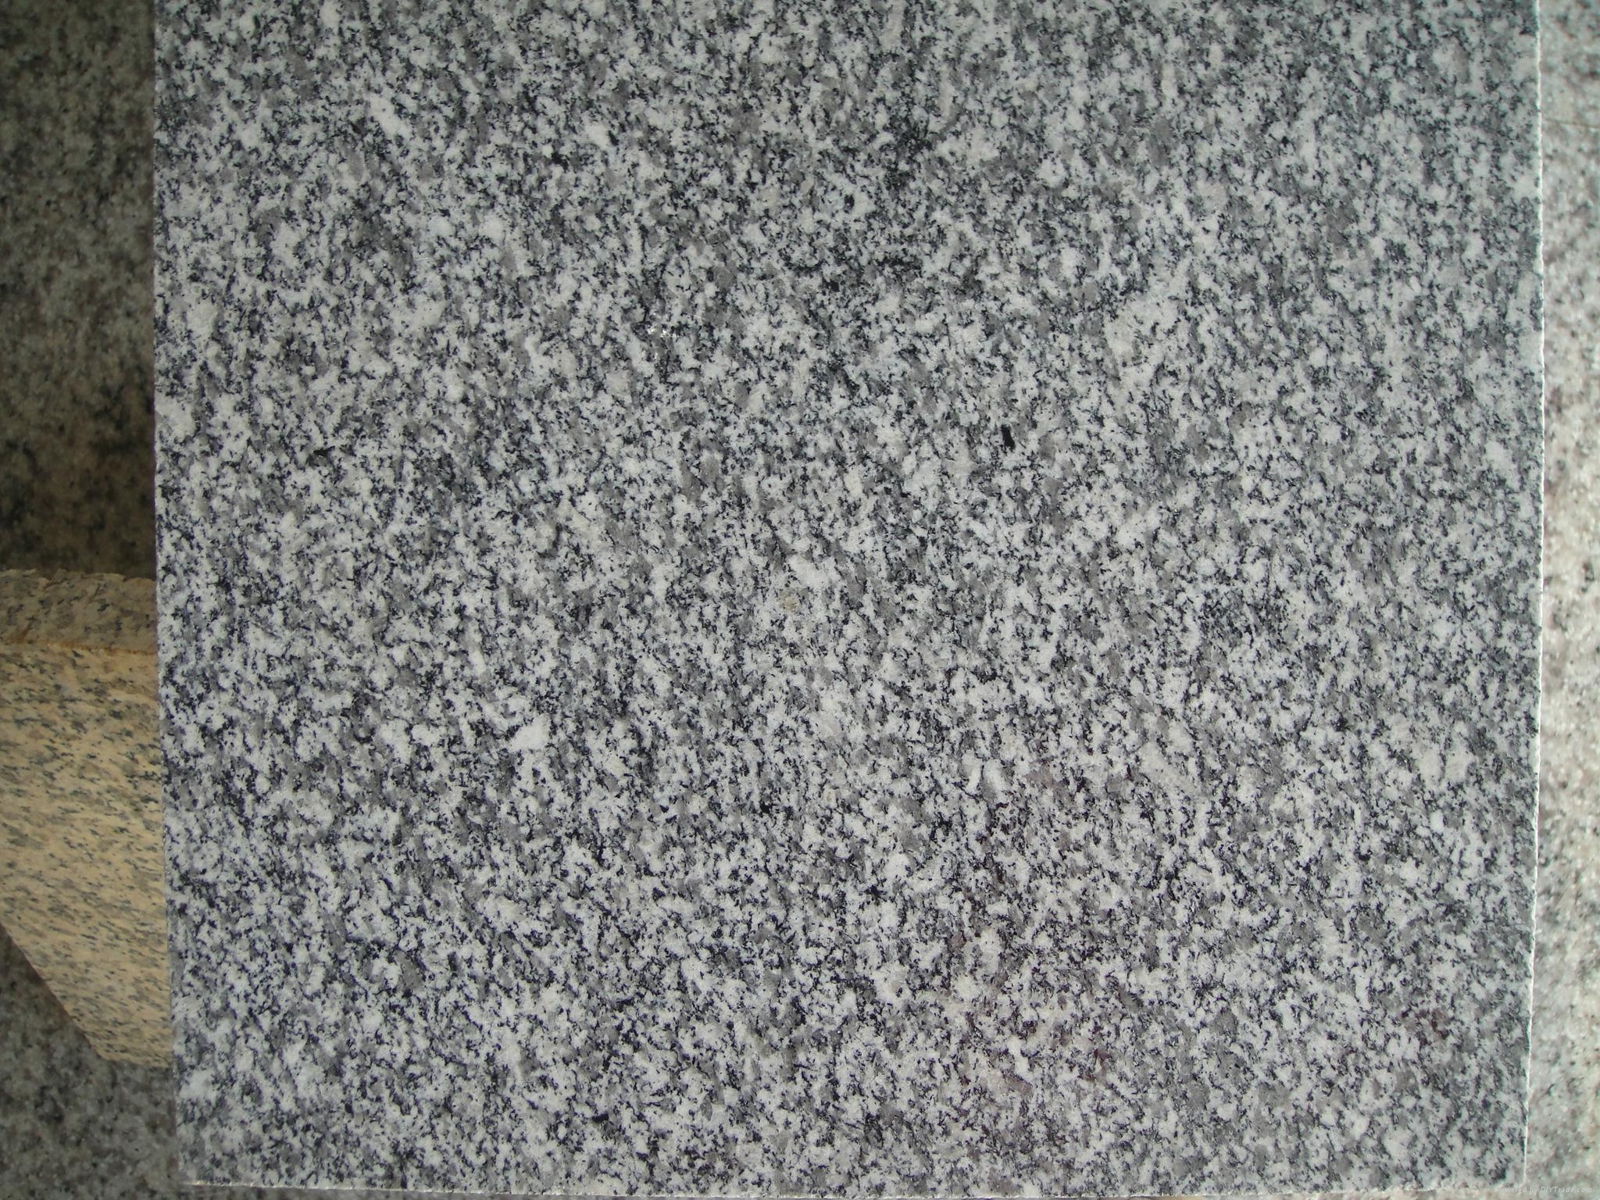 G688 Granite Tiles and Slabs China Grey Granite Flooring Tiles Wall Tiles Granit 2